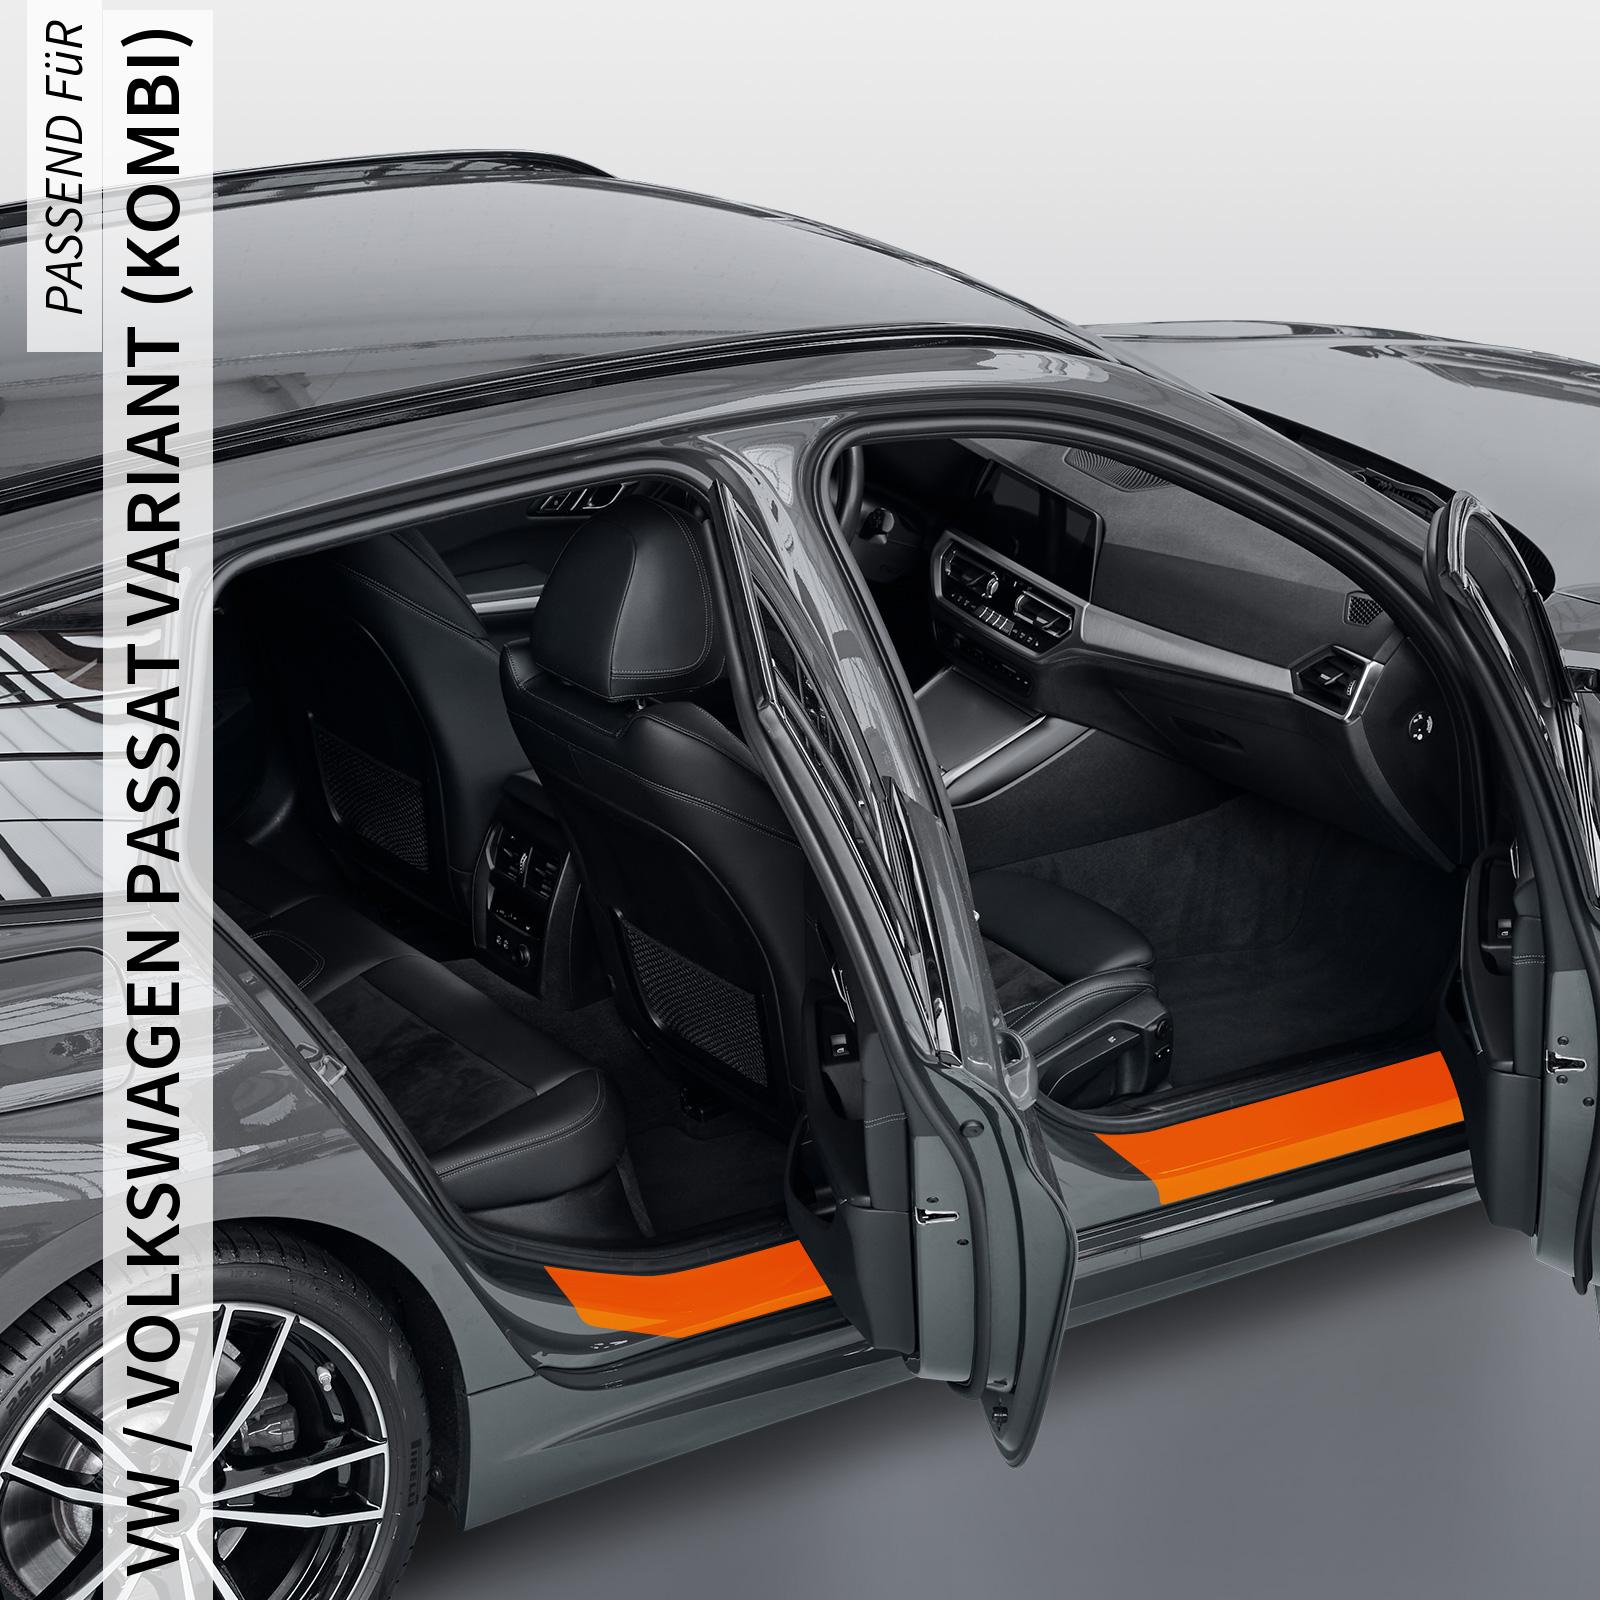 Einstiegsleistenschutzfolie für VW / Volkswagen Passat Variant (Kombi) B7, Typ 3C, BJ 10/2010-11/2014